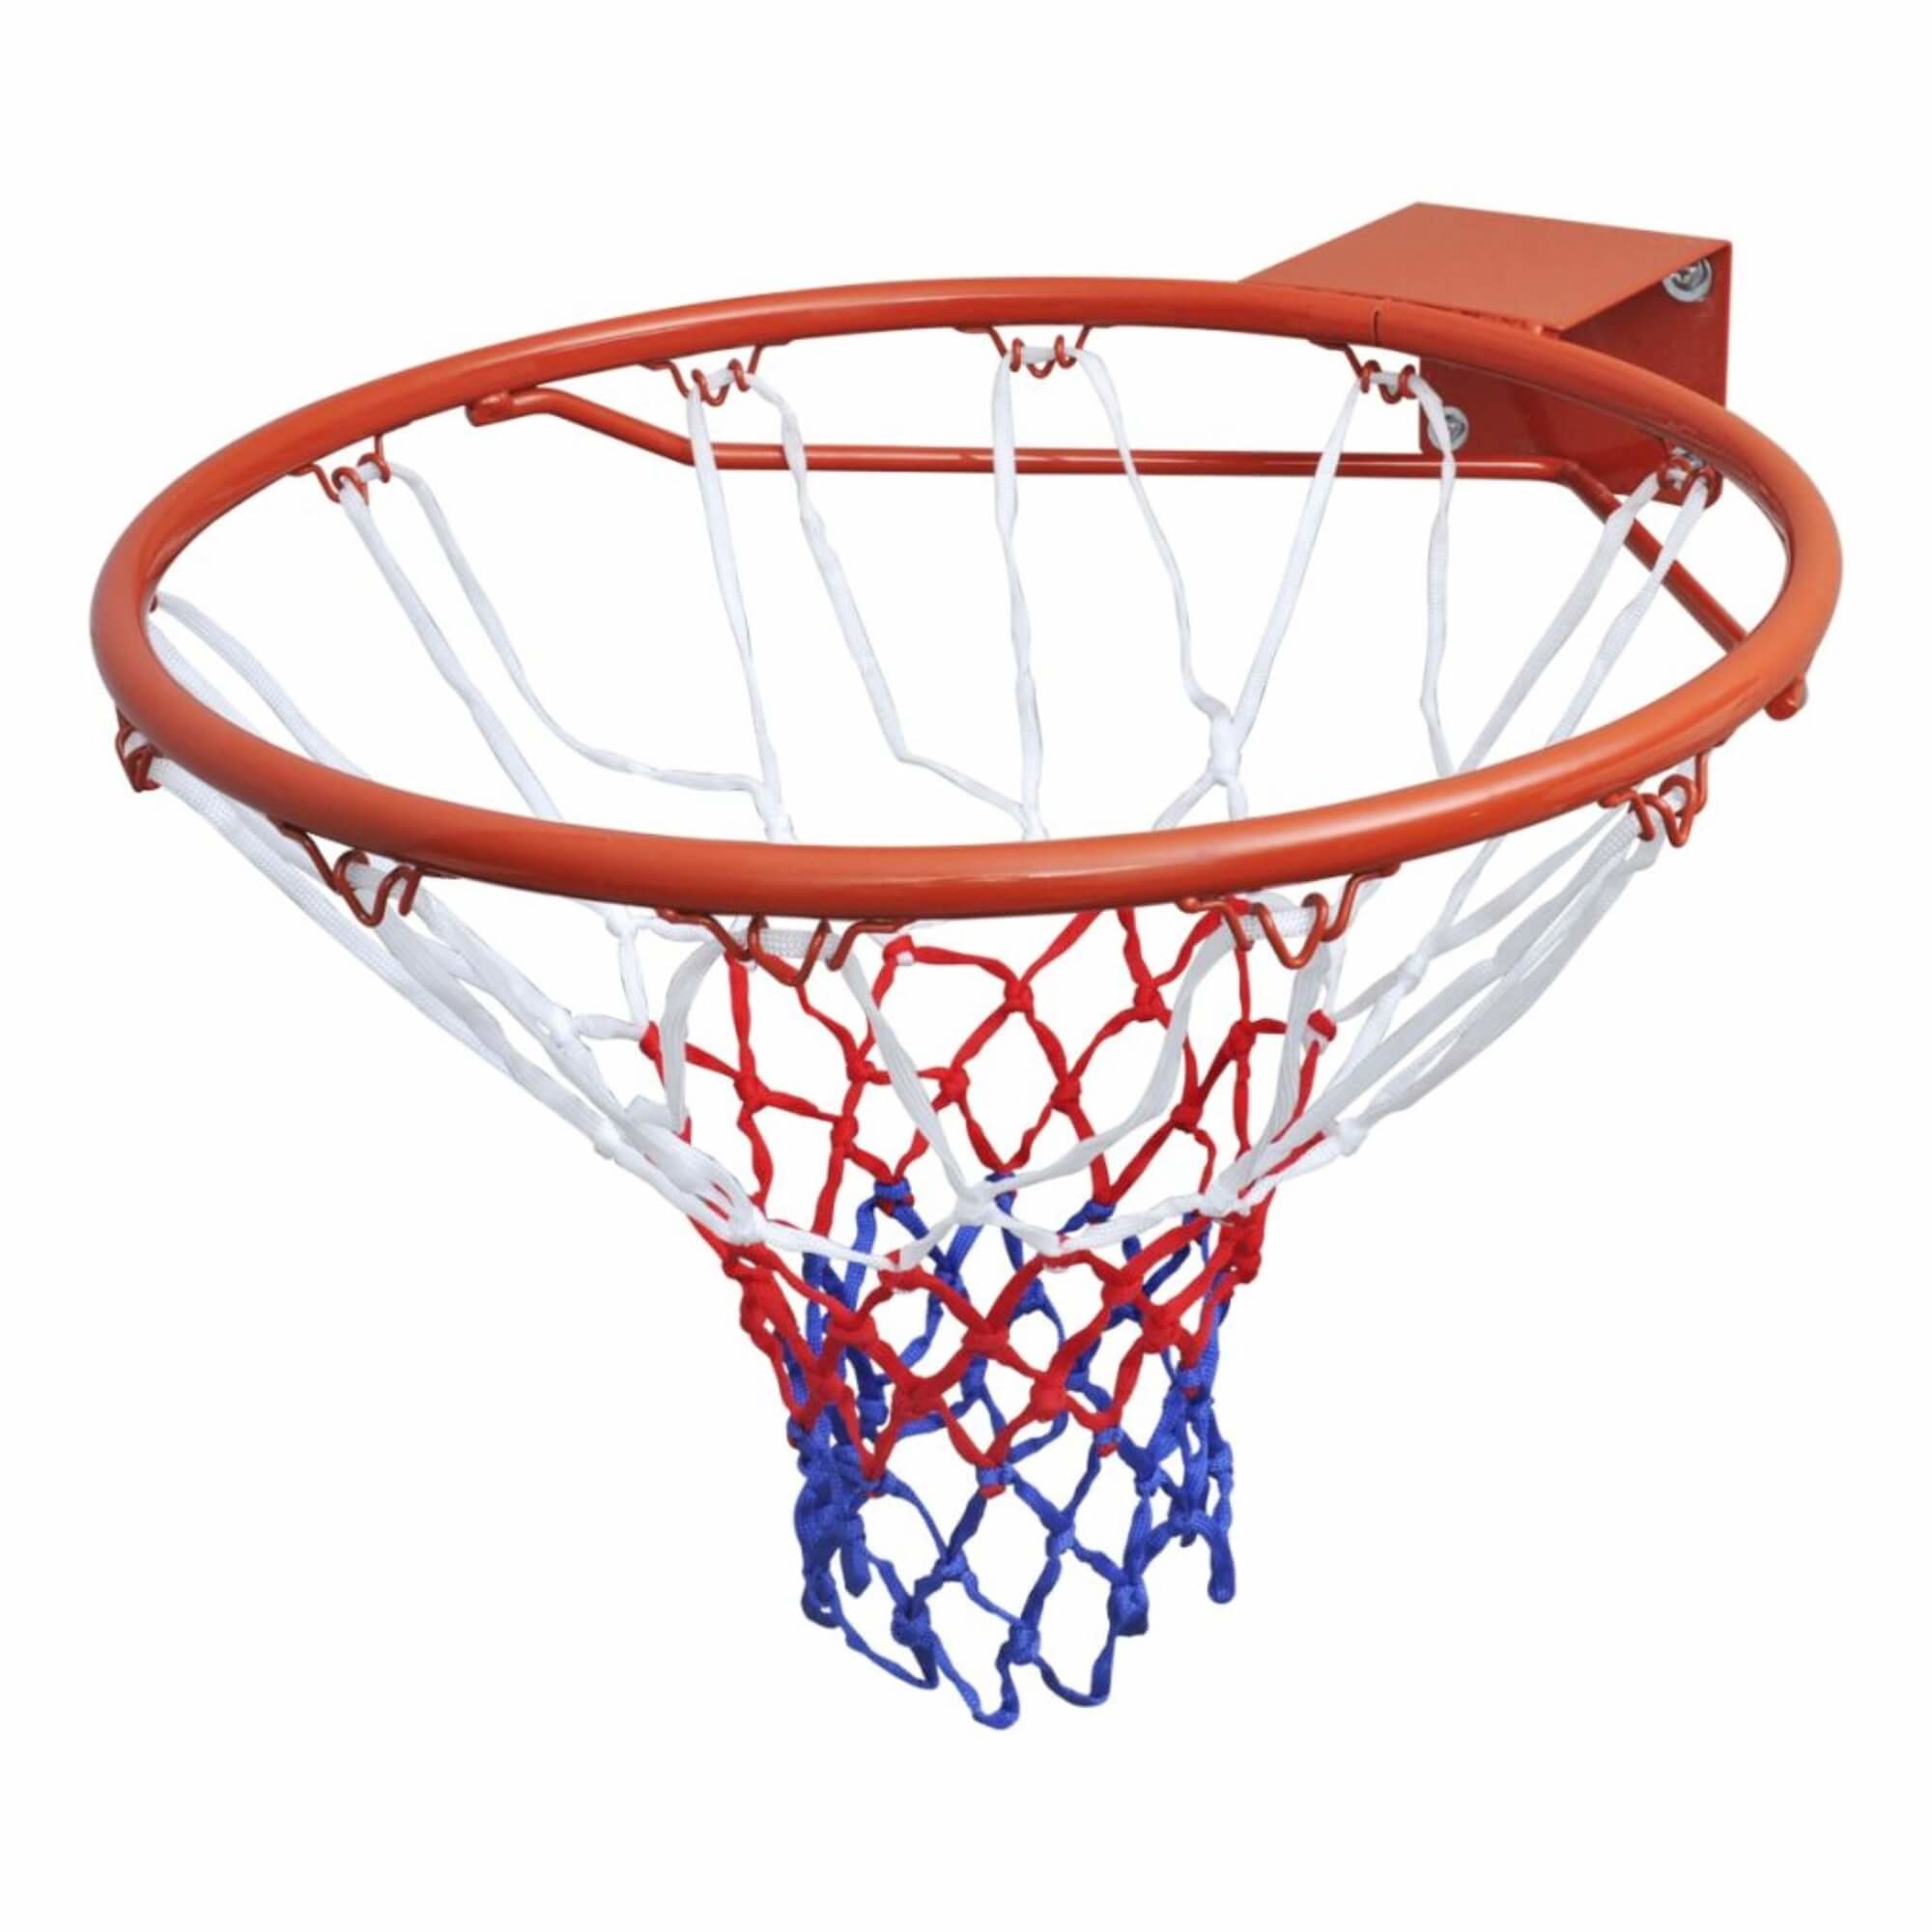 zout Terughoudendheid adopteren Dunlop Basketbalkorf / Basketbal ring 45cm + net (Oranje) kopen? - 2Cheap